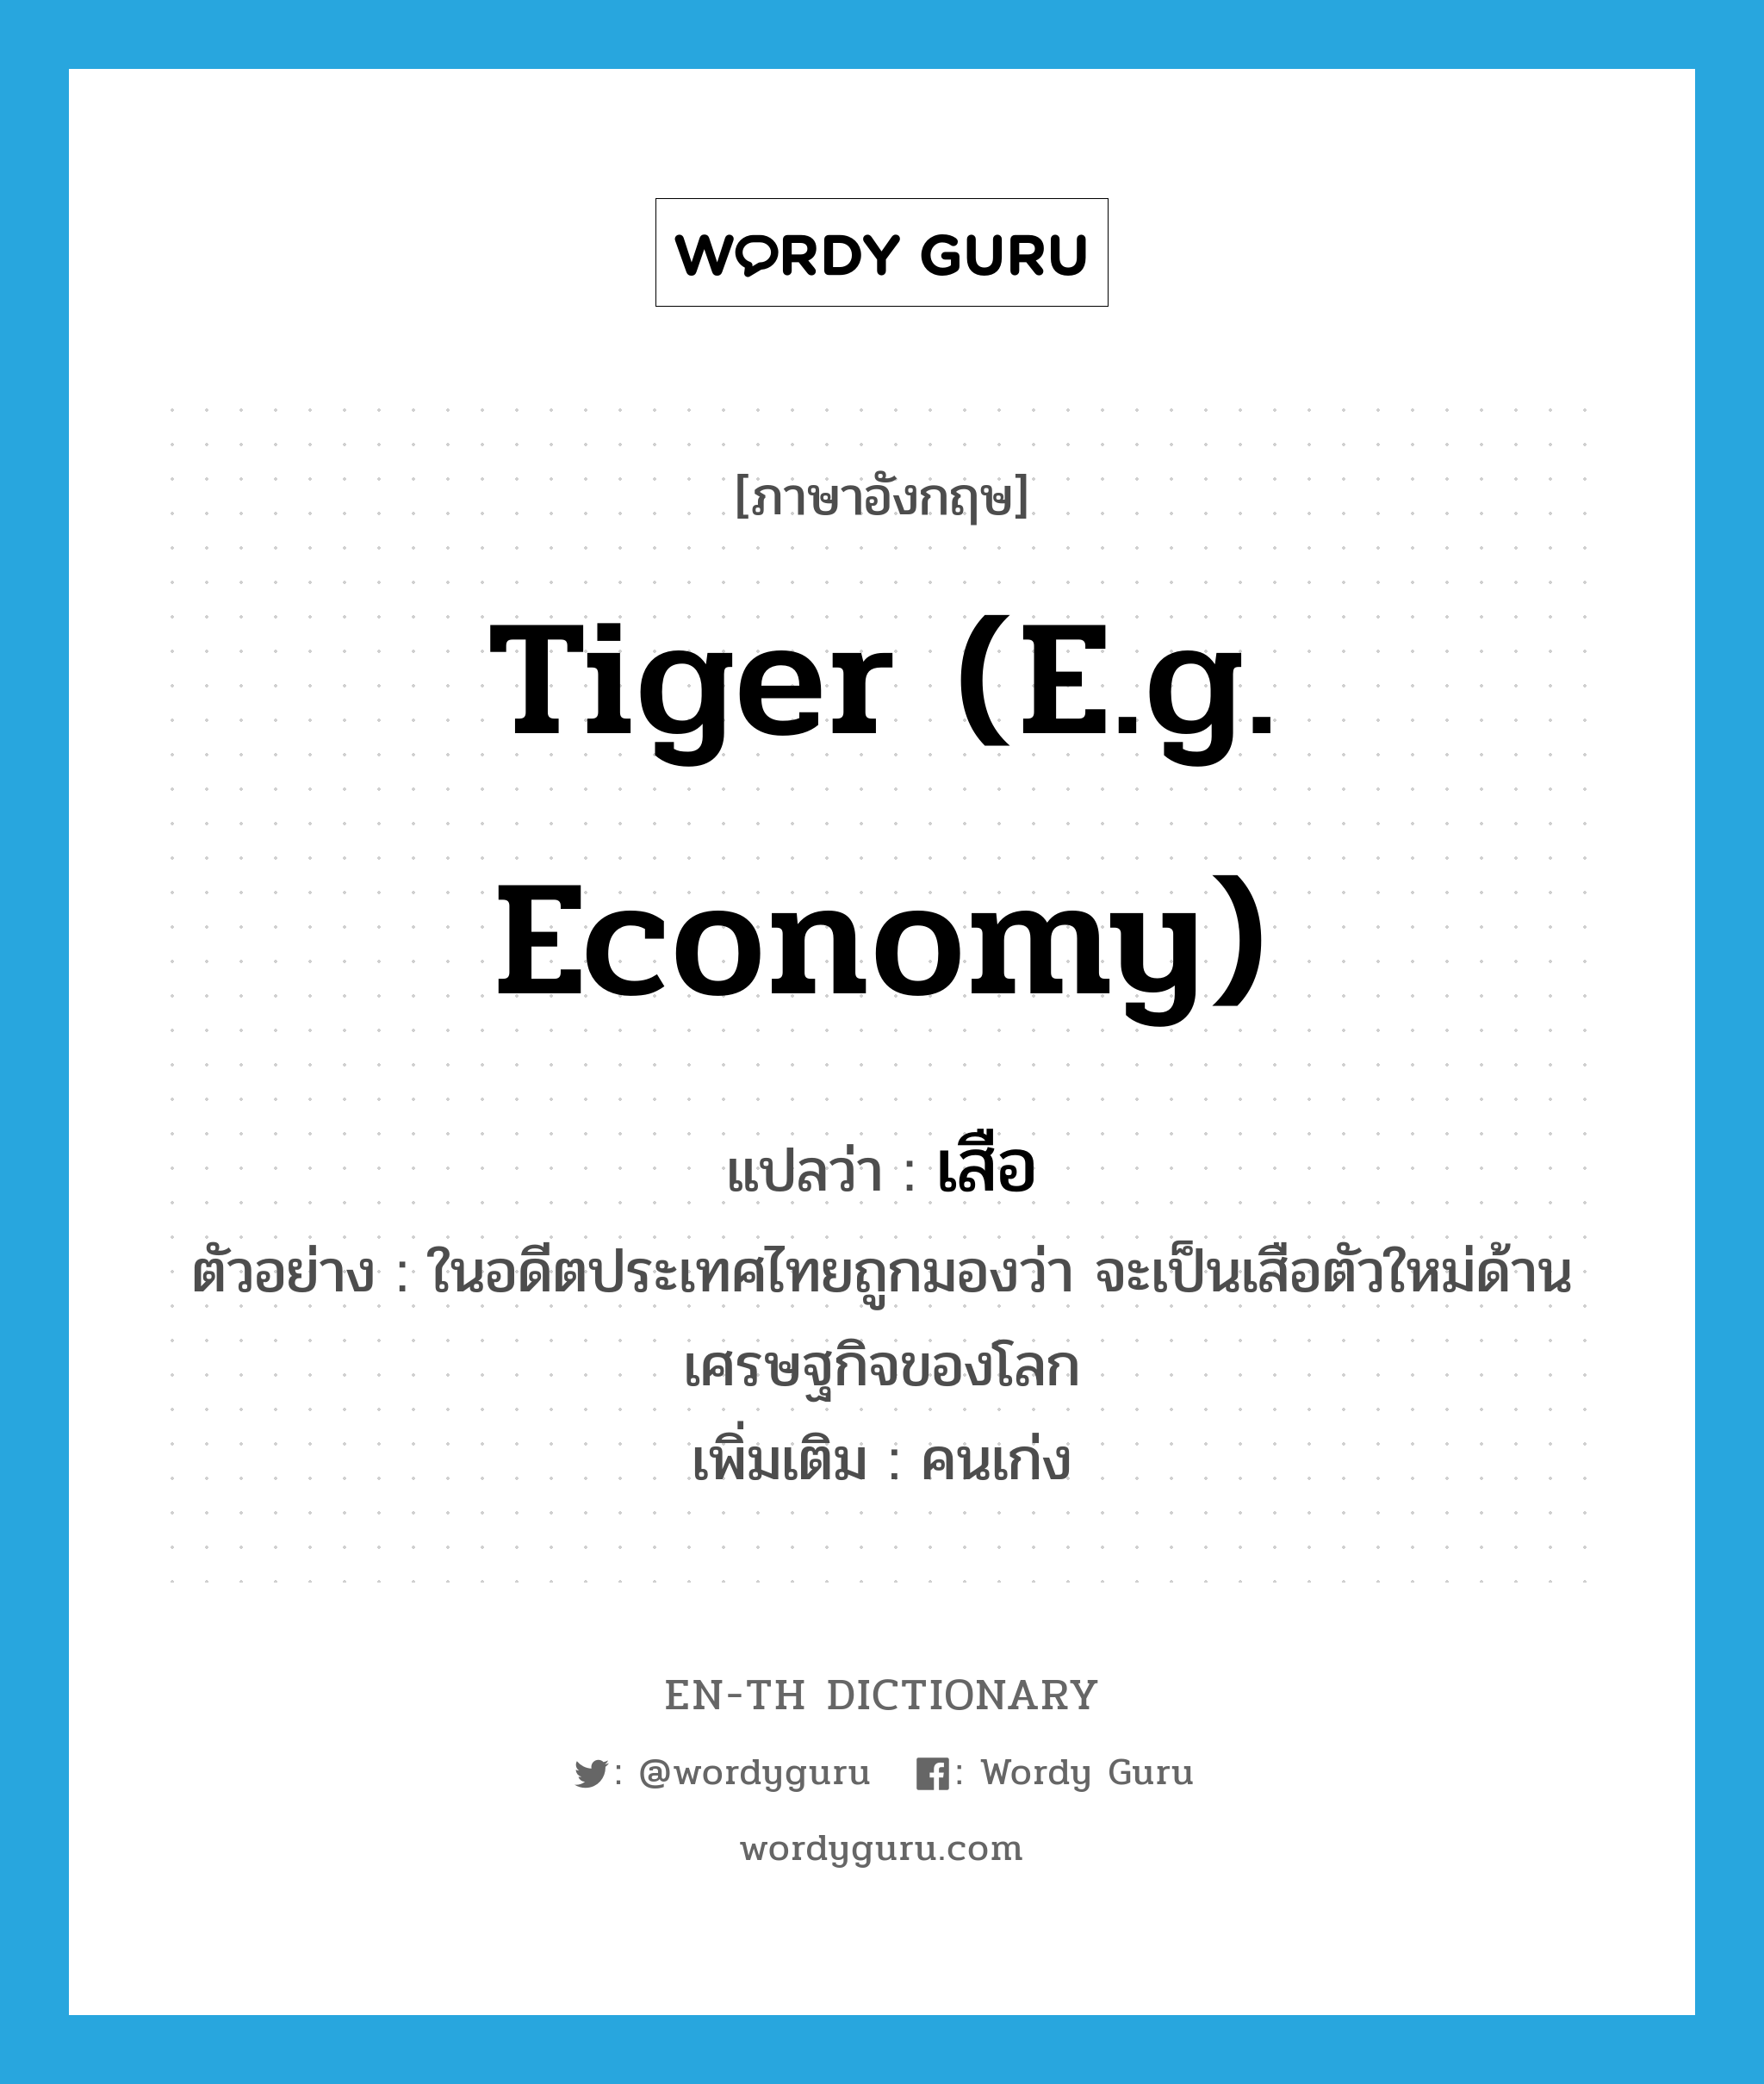 เสือ ภาษาอังกฤษ?, คำศัพท์ภาษาอังกฤษ เสือ แปลว่า tiger (e.g. economy) ประเภท N ตัวอย่าง ในอดีตประเทศไทยถูกมองว่า จะเป็นเสือตัวใหม่ด้านเศรษฐกิจของโลก เพิ่มเติม คนเก่ง หมวด N